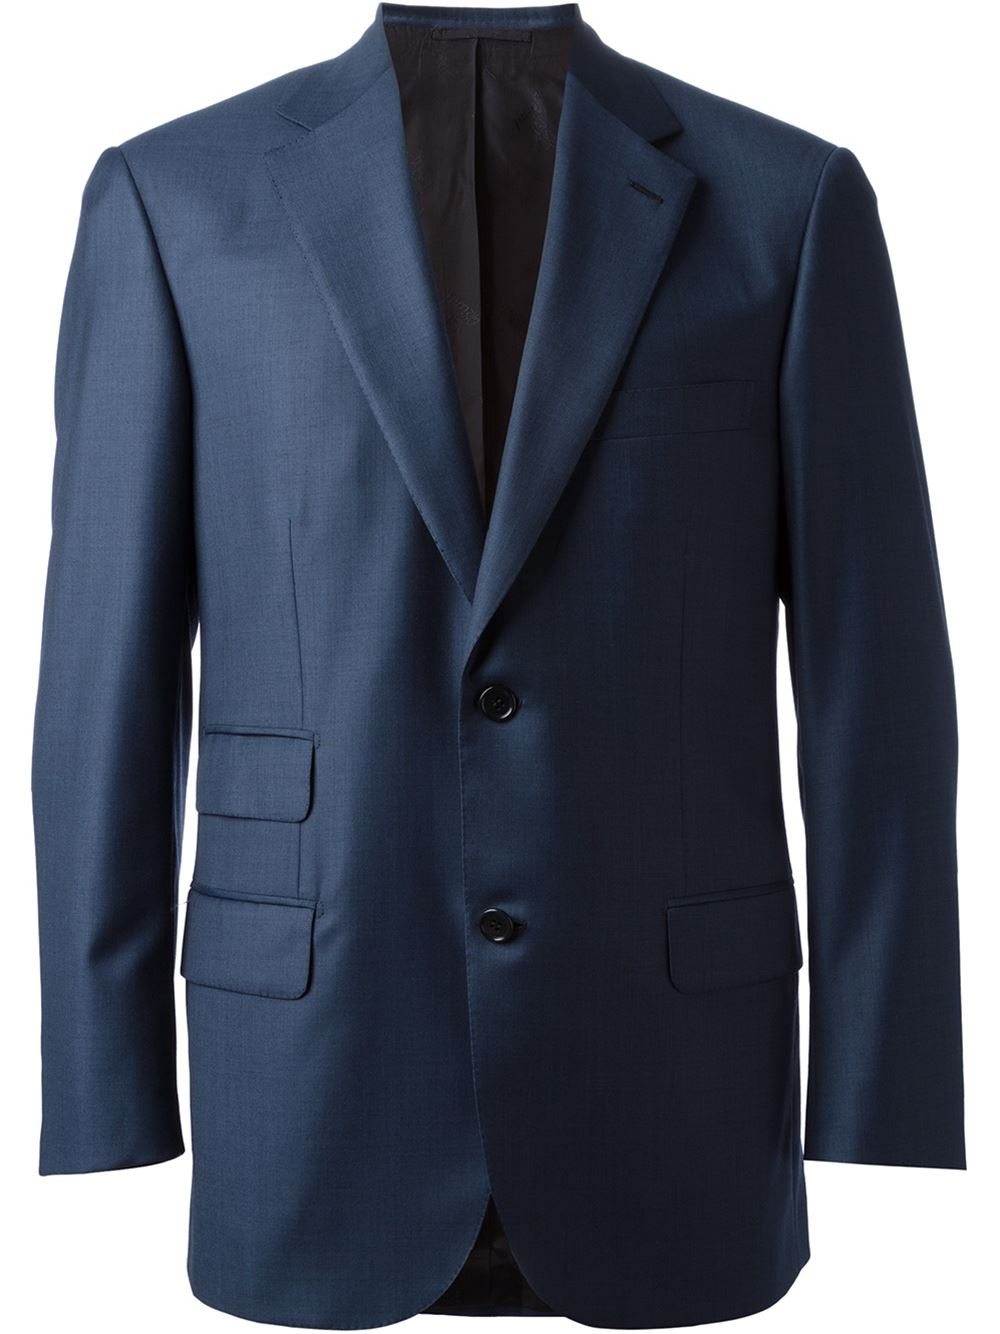 Brioni 'Parlamento' Suit in Blue for Men - Lyst